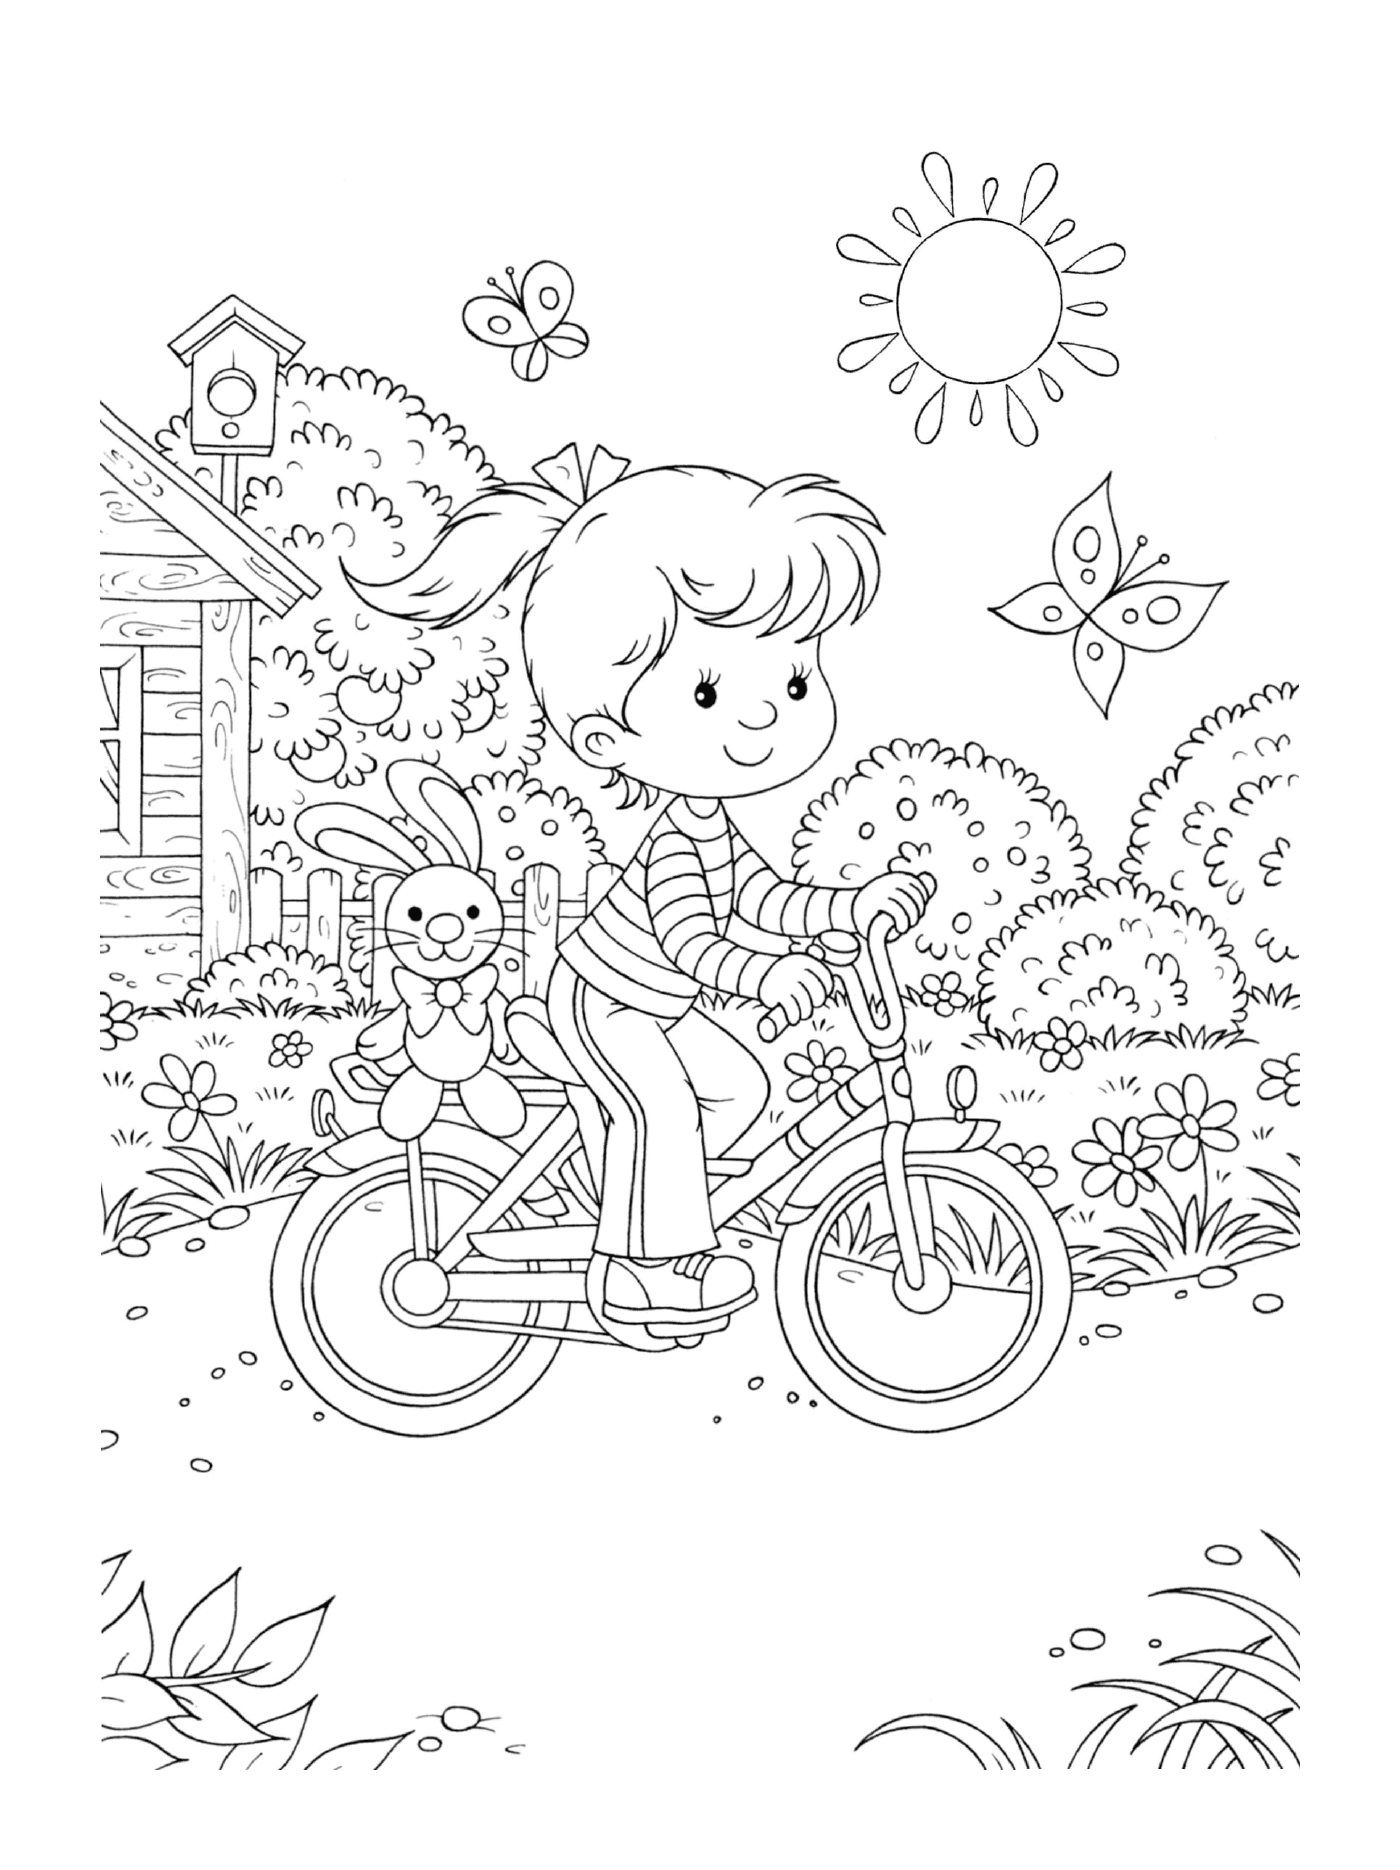  Una ragazzina va in bicicletta con un coniglio sul retro 